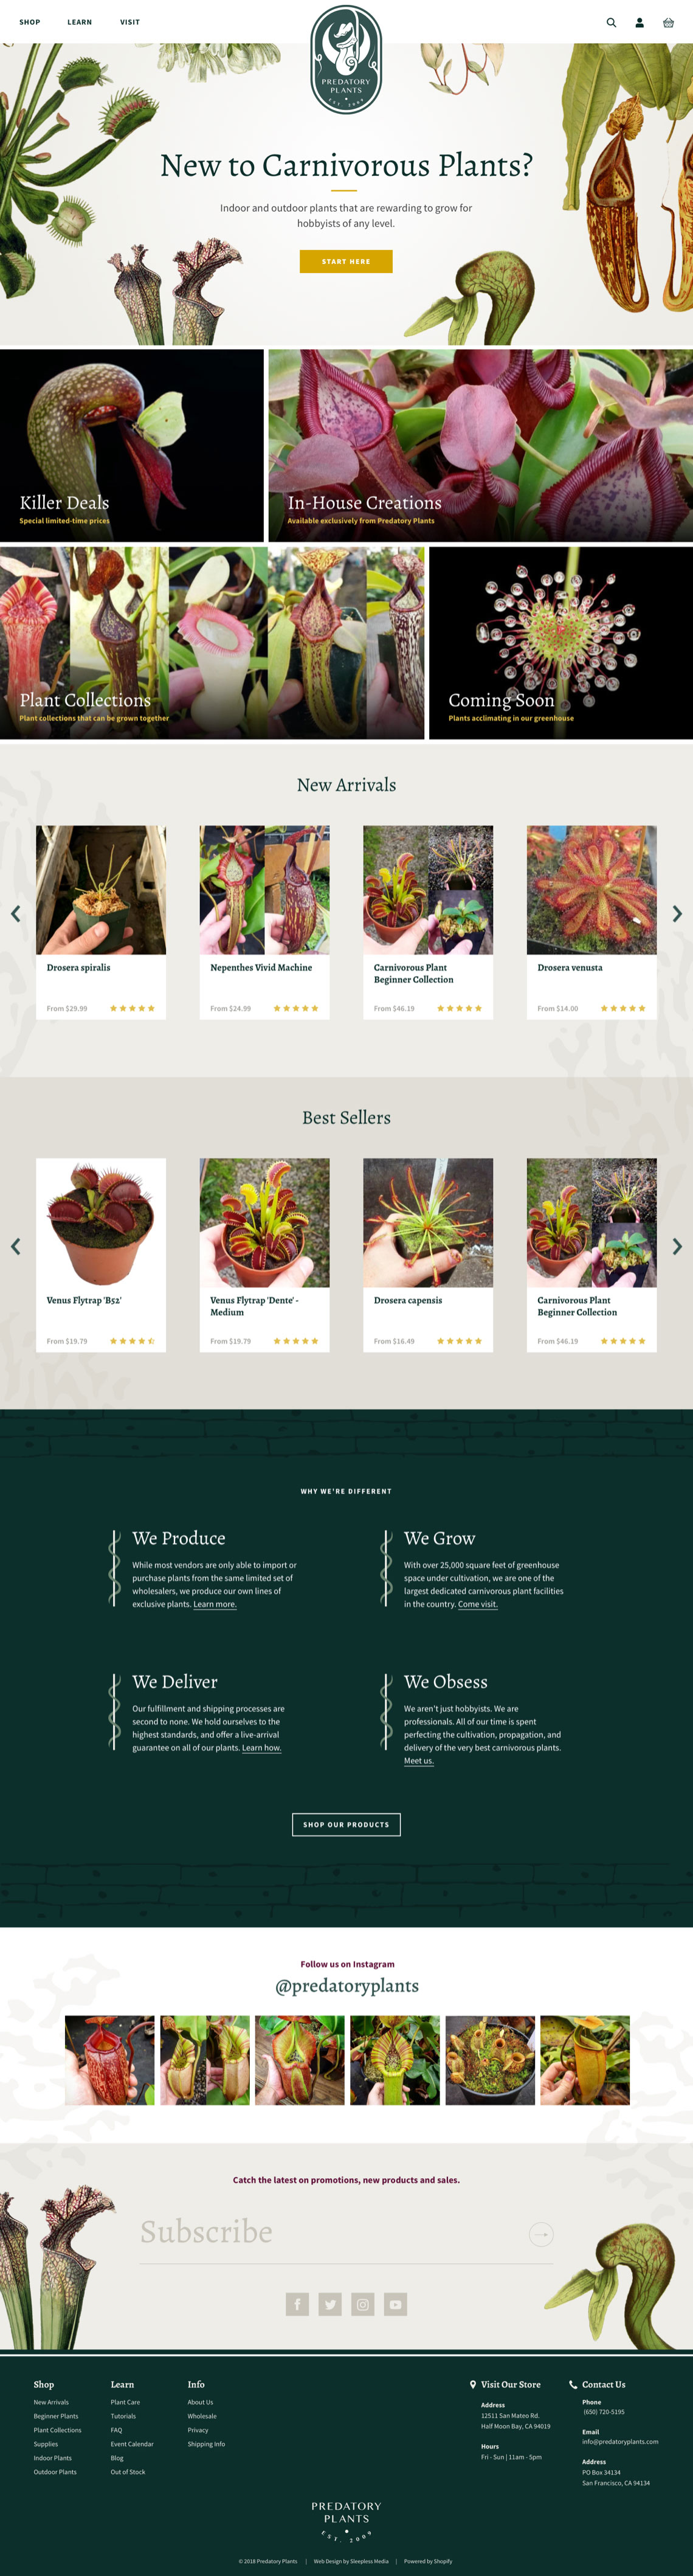 Predatory Plants - Homepage